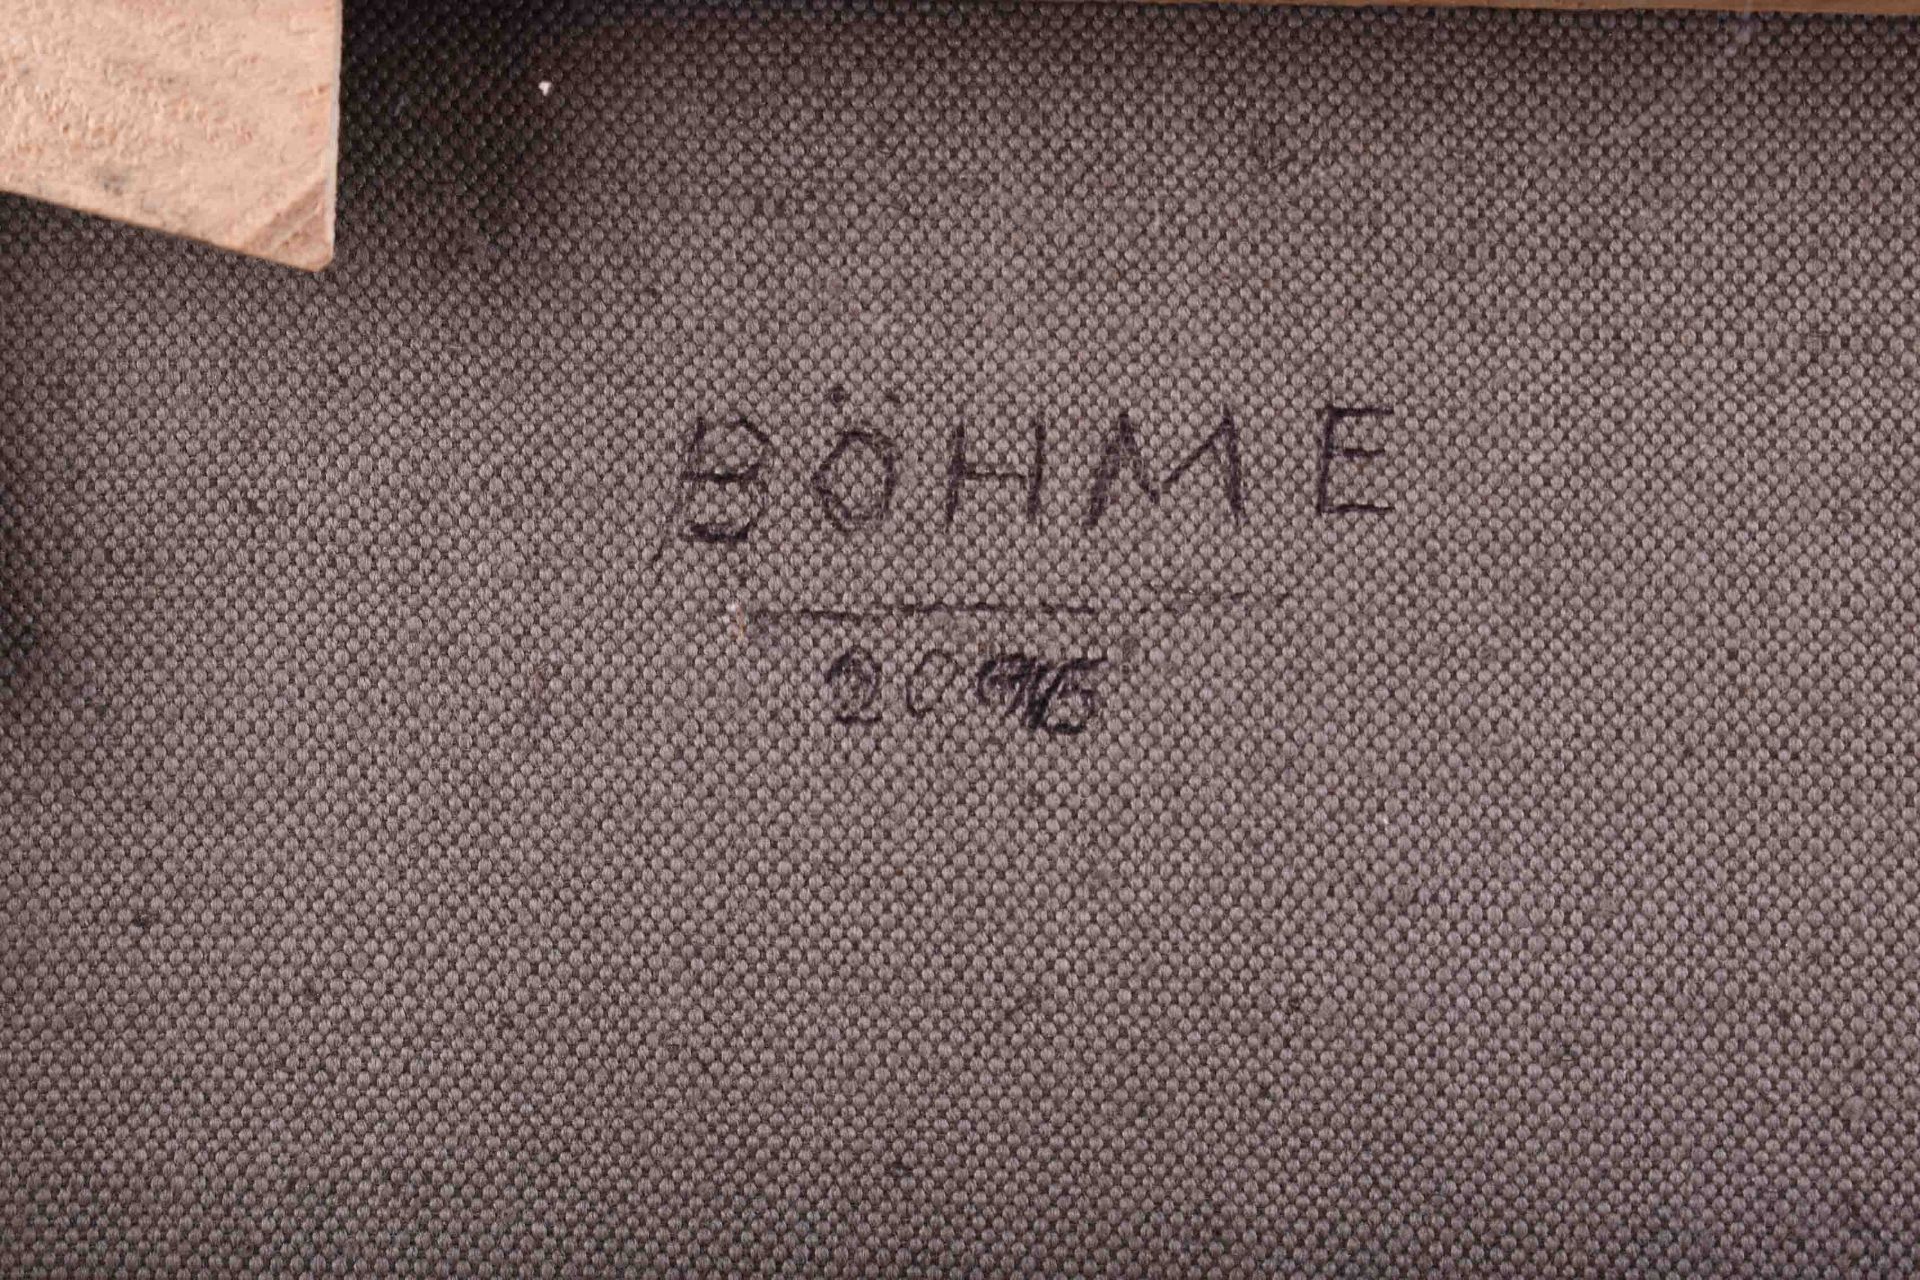  Lothar BÖHME (1938) - Image 7 of 8